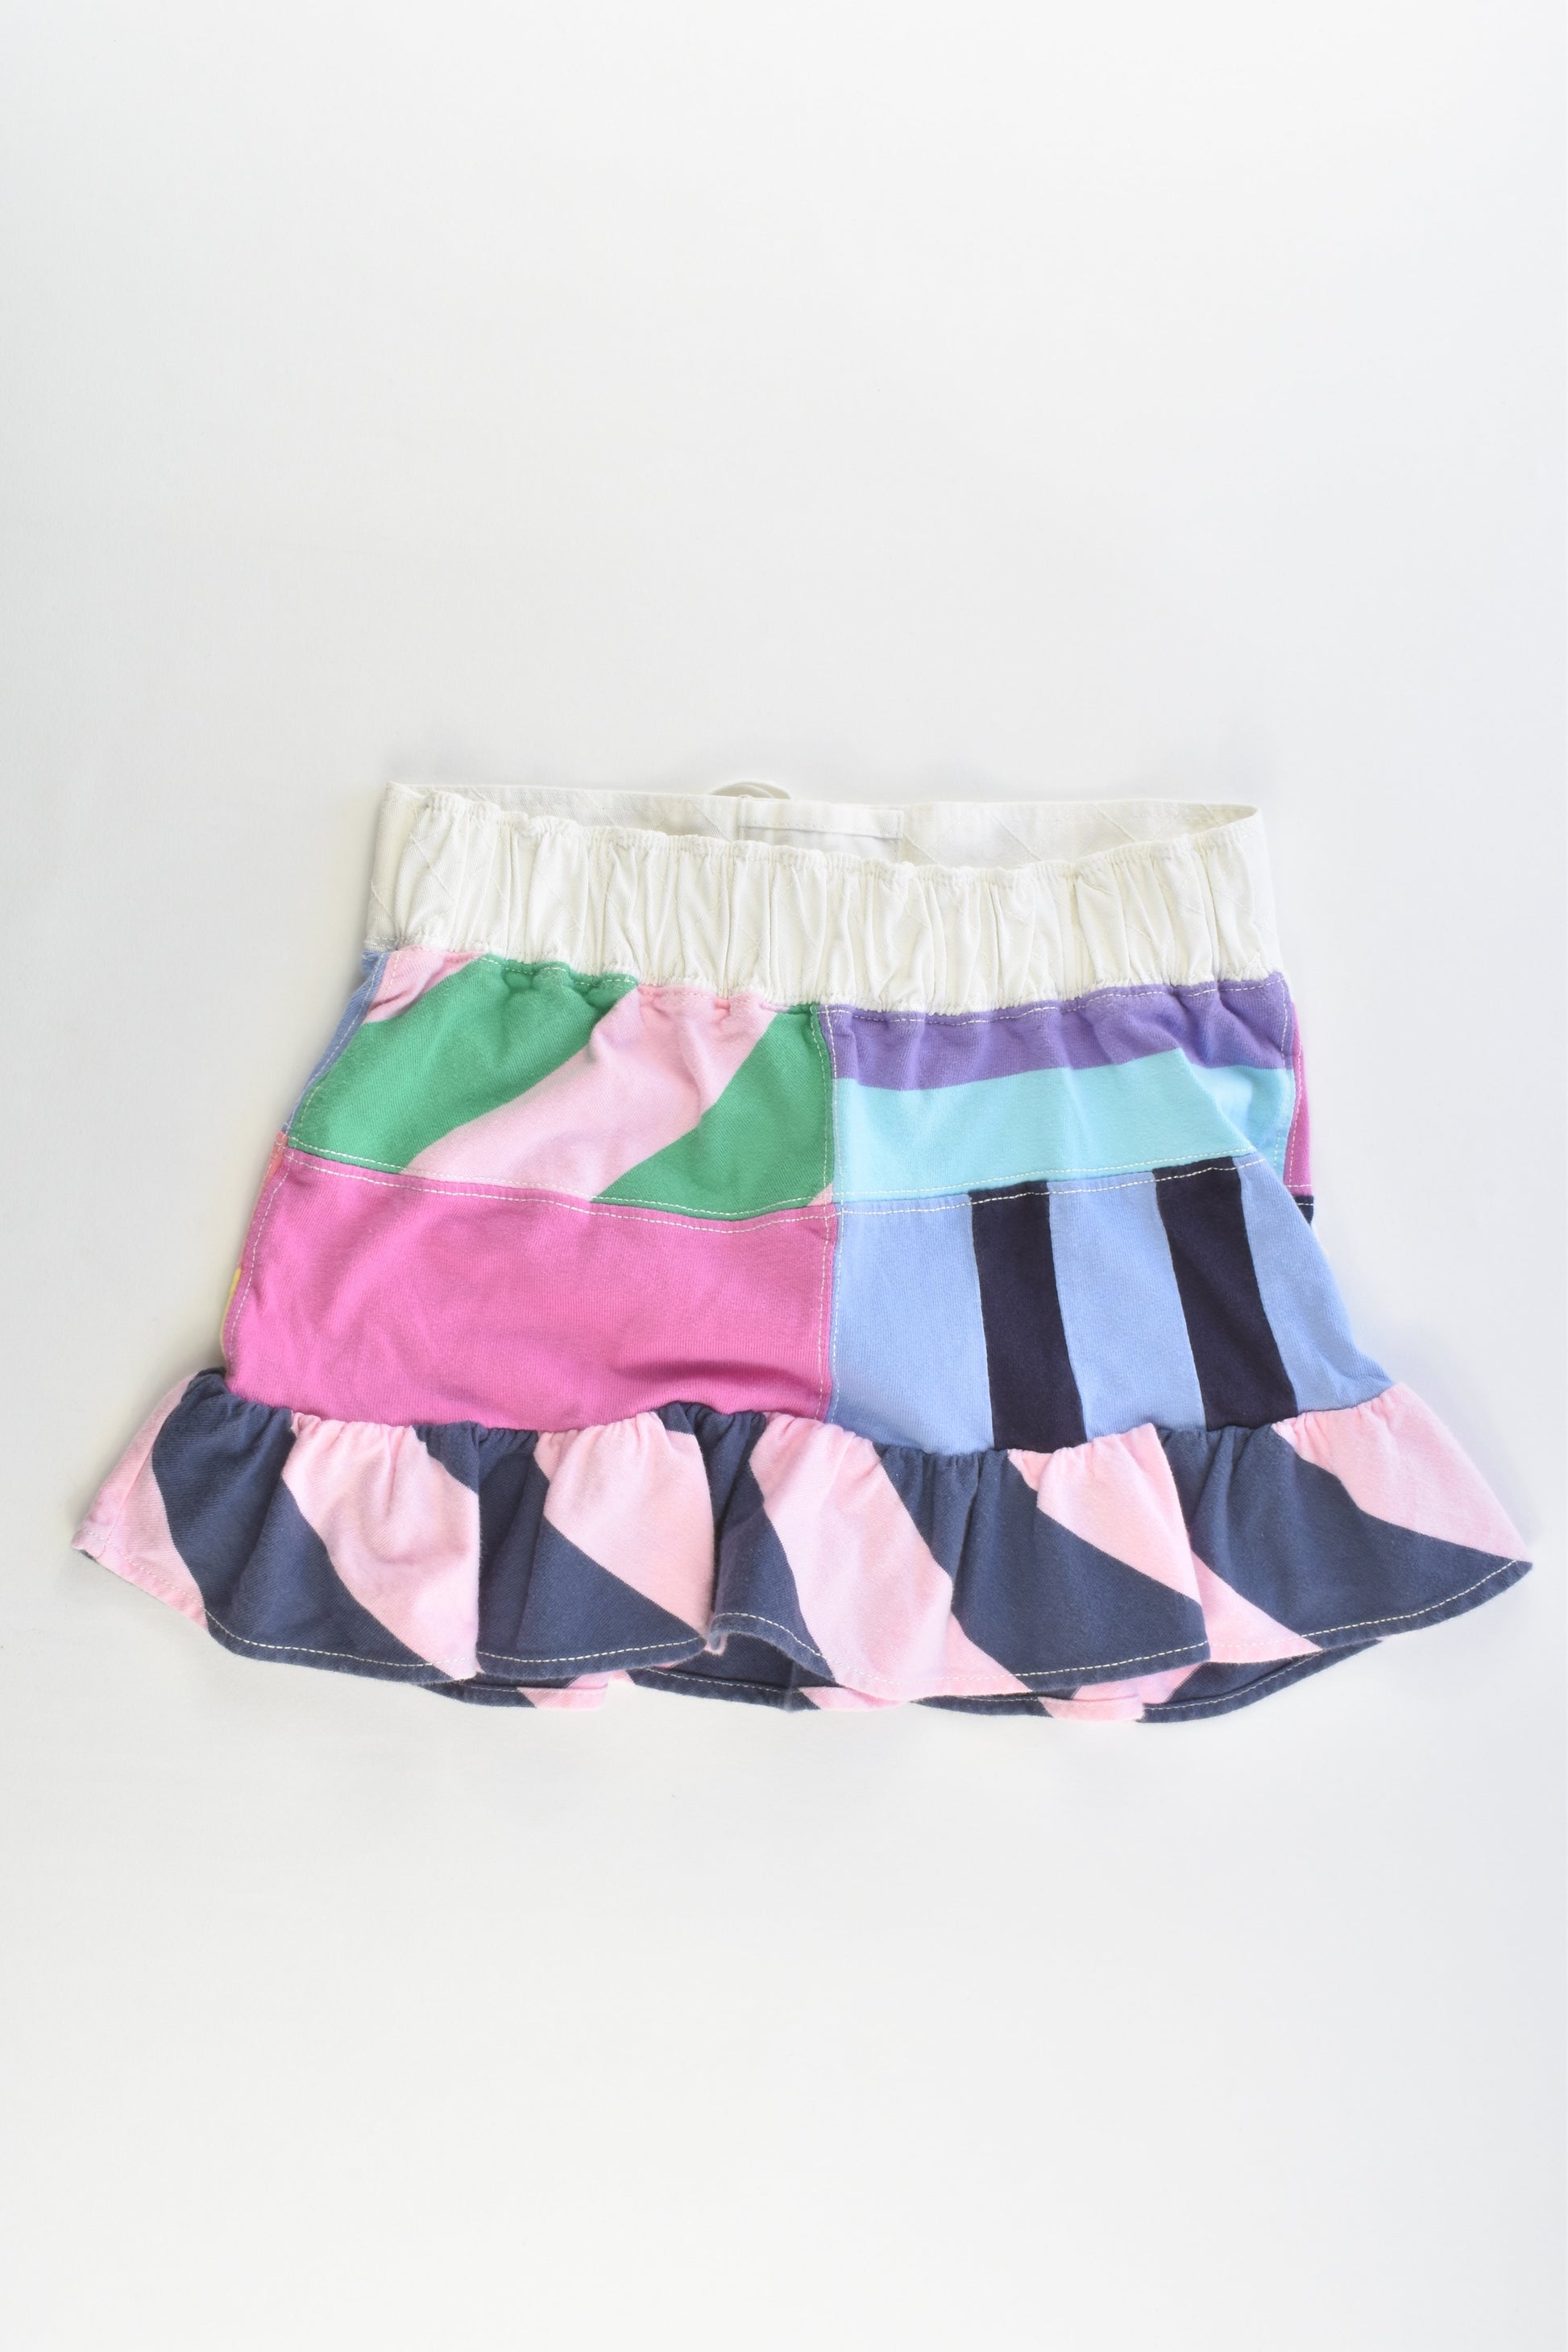 Ralph Lauren Size 7 Skirt